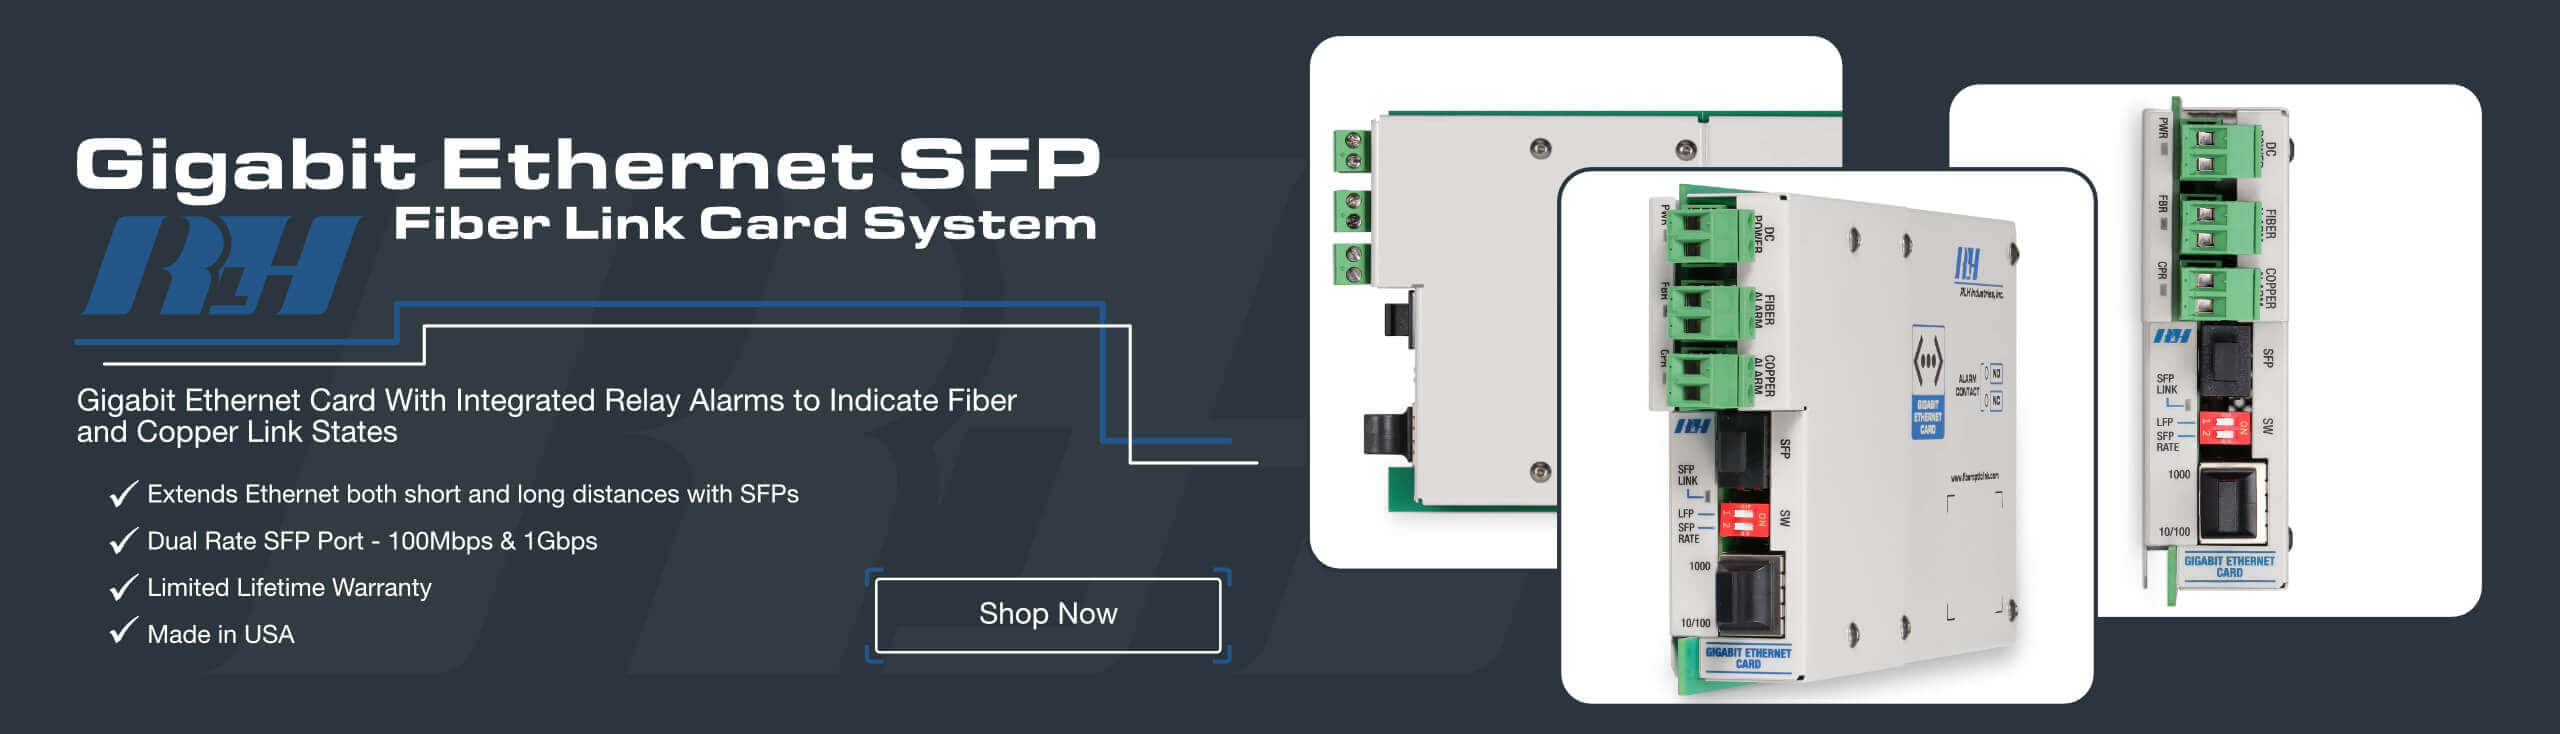 Gigabit Ethernet SFP Fiber Link Card System